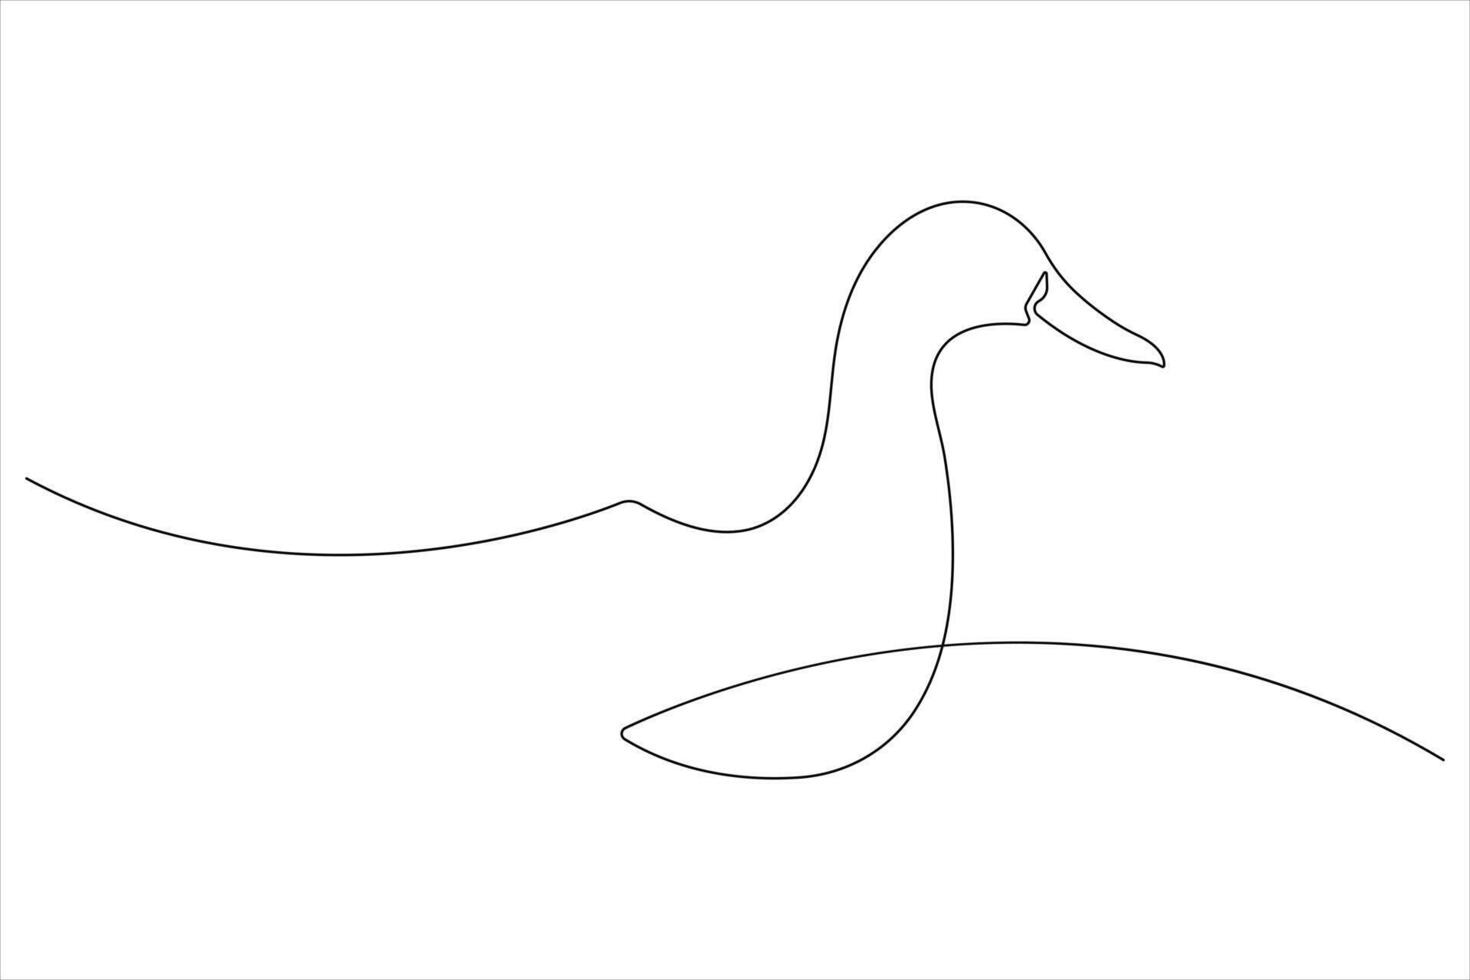 continuo singolo linea arte disegno di animale domestico animale anatra concetto schema vettore illustrazione